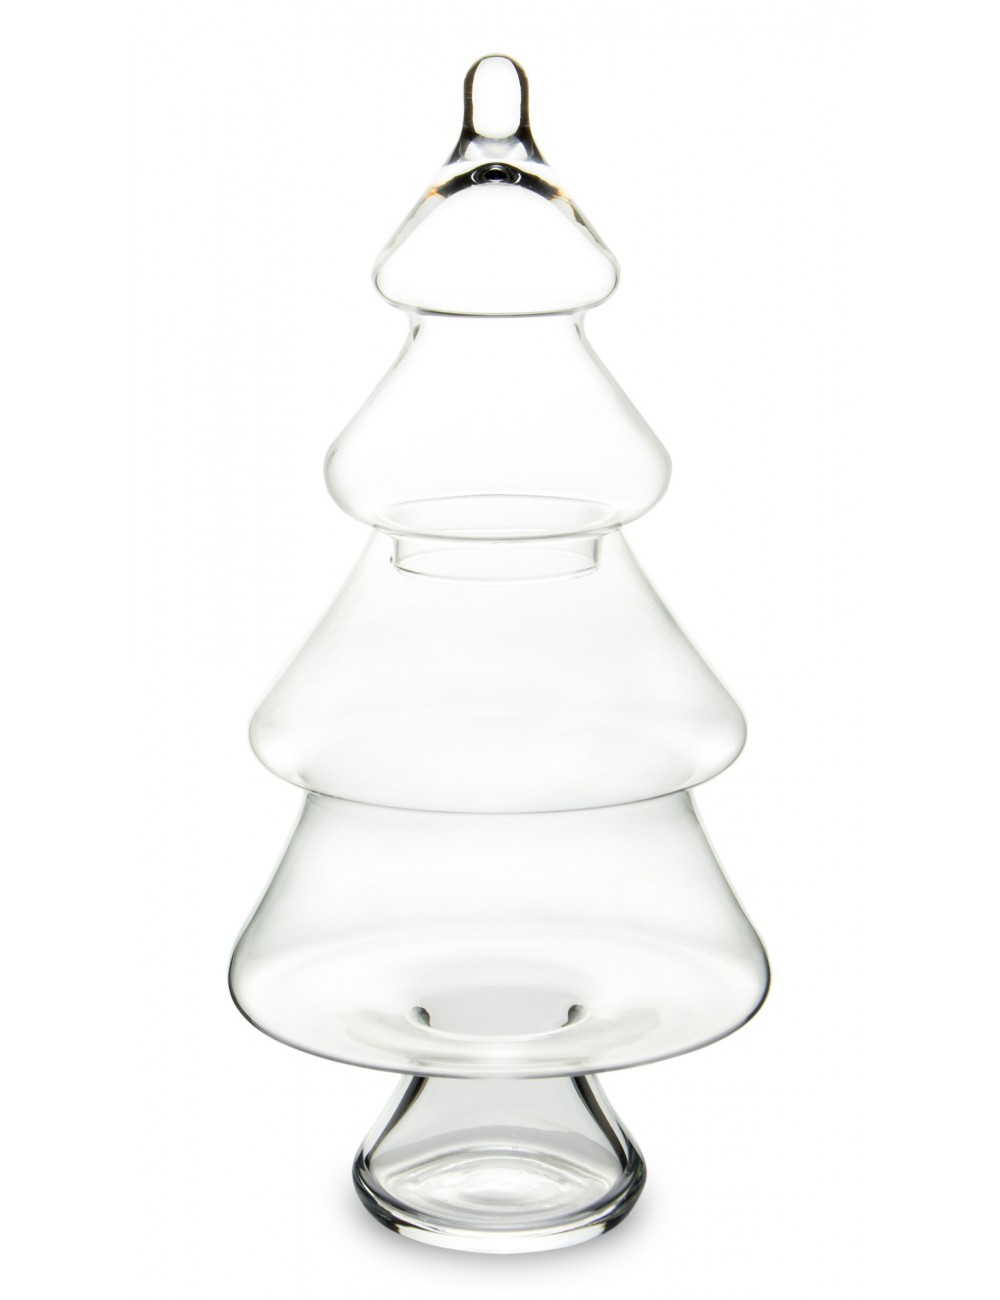 Szklana transparentna bombonierka CHOINKA na słodycze, światełka 40 cm